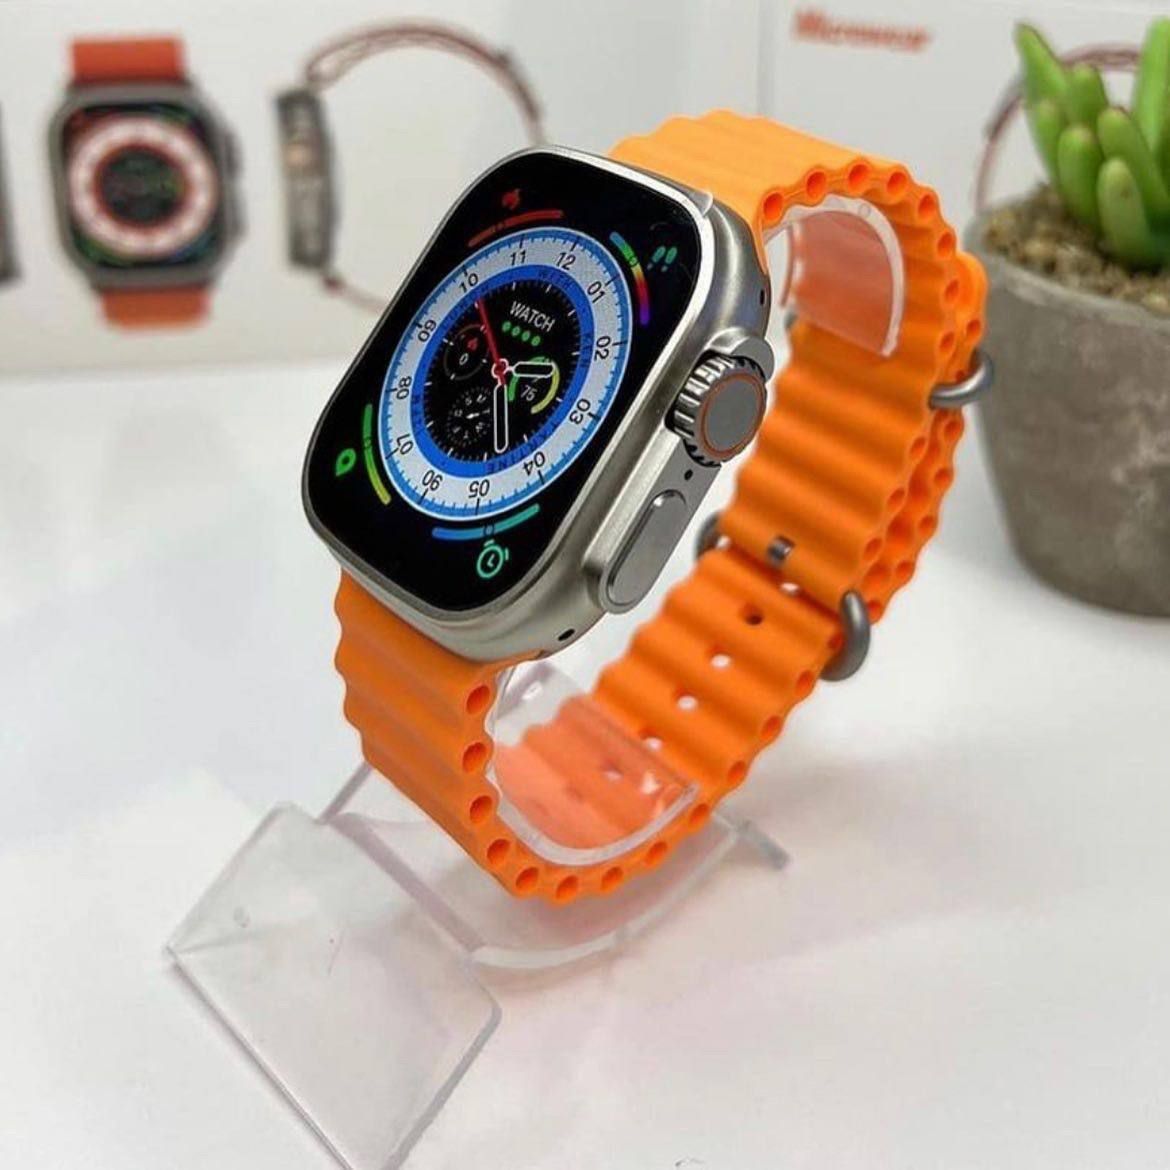 Smartwatch T800 novo